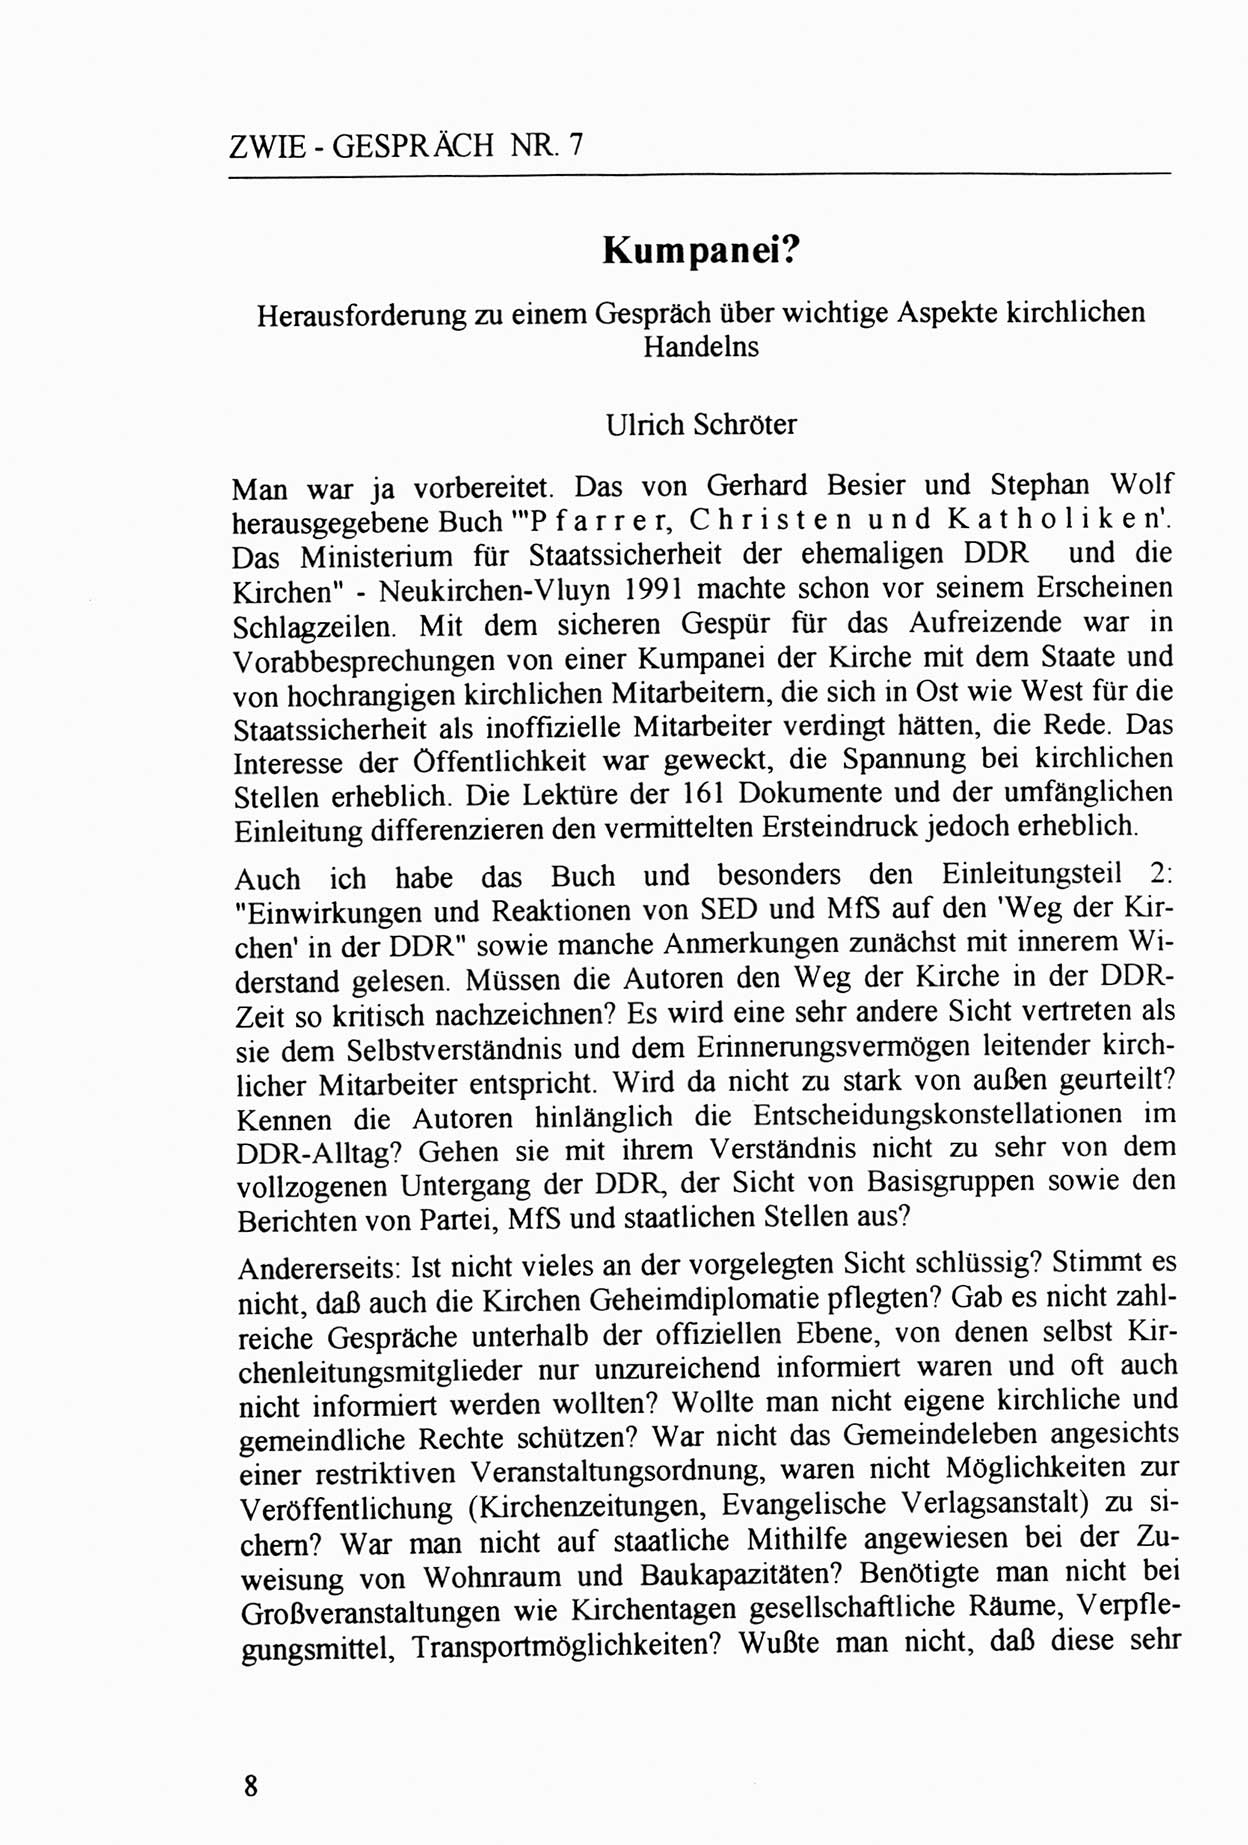 Zwie-Gespräch, Beiträge zur Aufarbeitung der Staatssicherheits-Vergangenheit [Deutsche Demokratische Republik (DDR)], Ausgabe Nr. 7, Berlin 1992, Seite 8 (Zwie-Gespr. Ausg. 7 1992, S. 8)